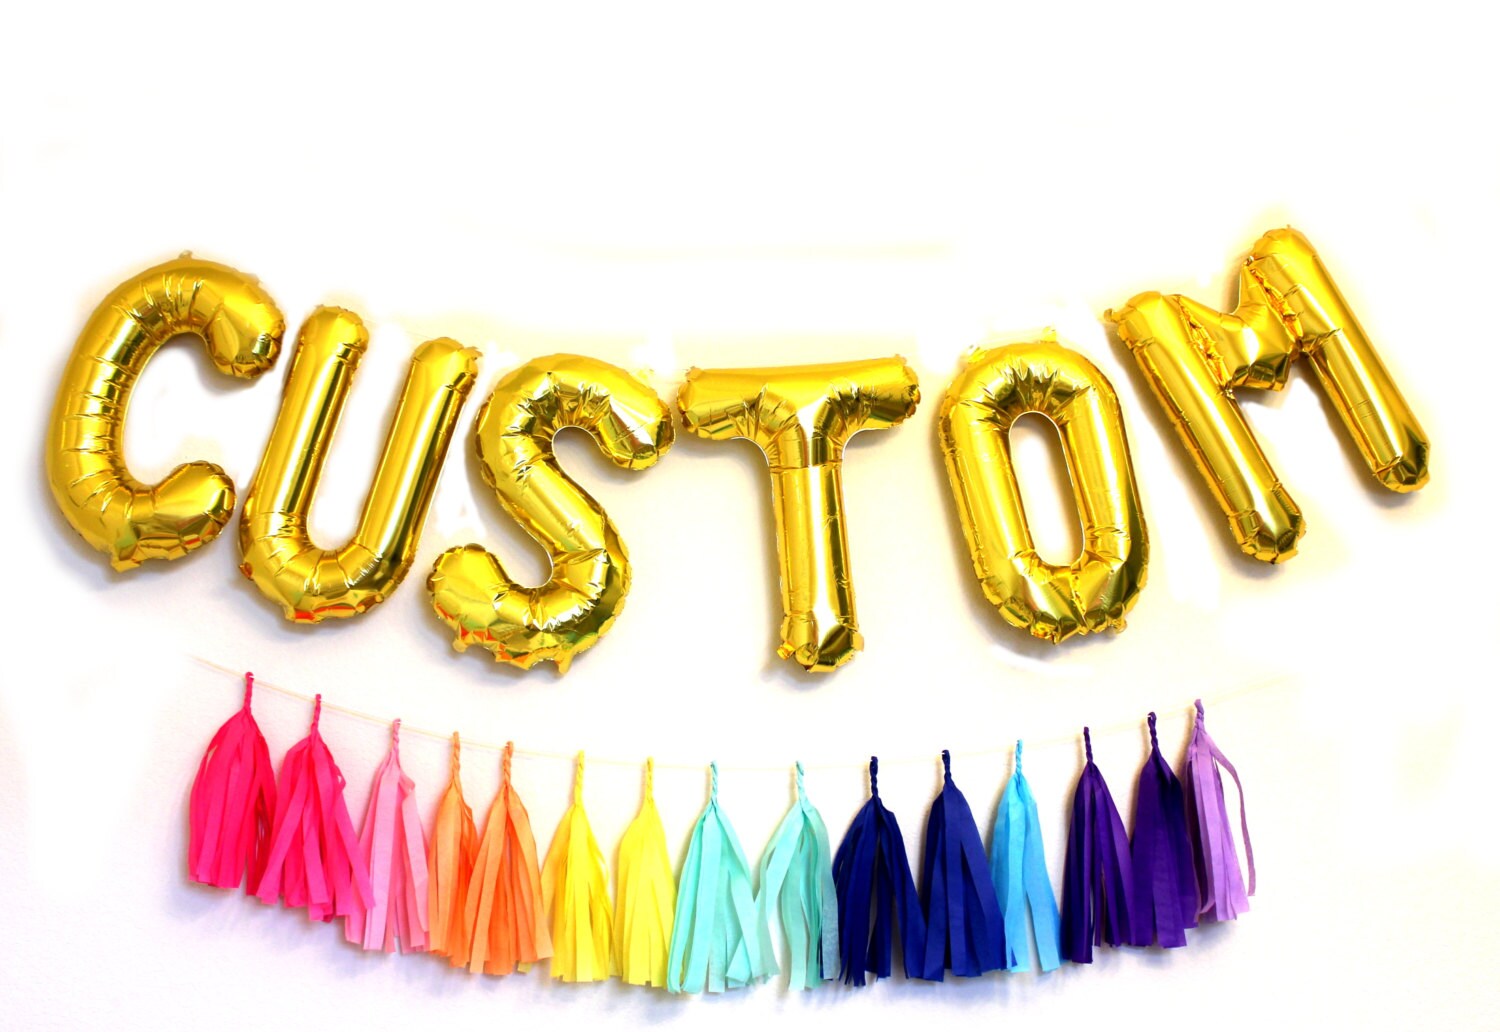 custom letter balloons